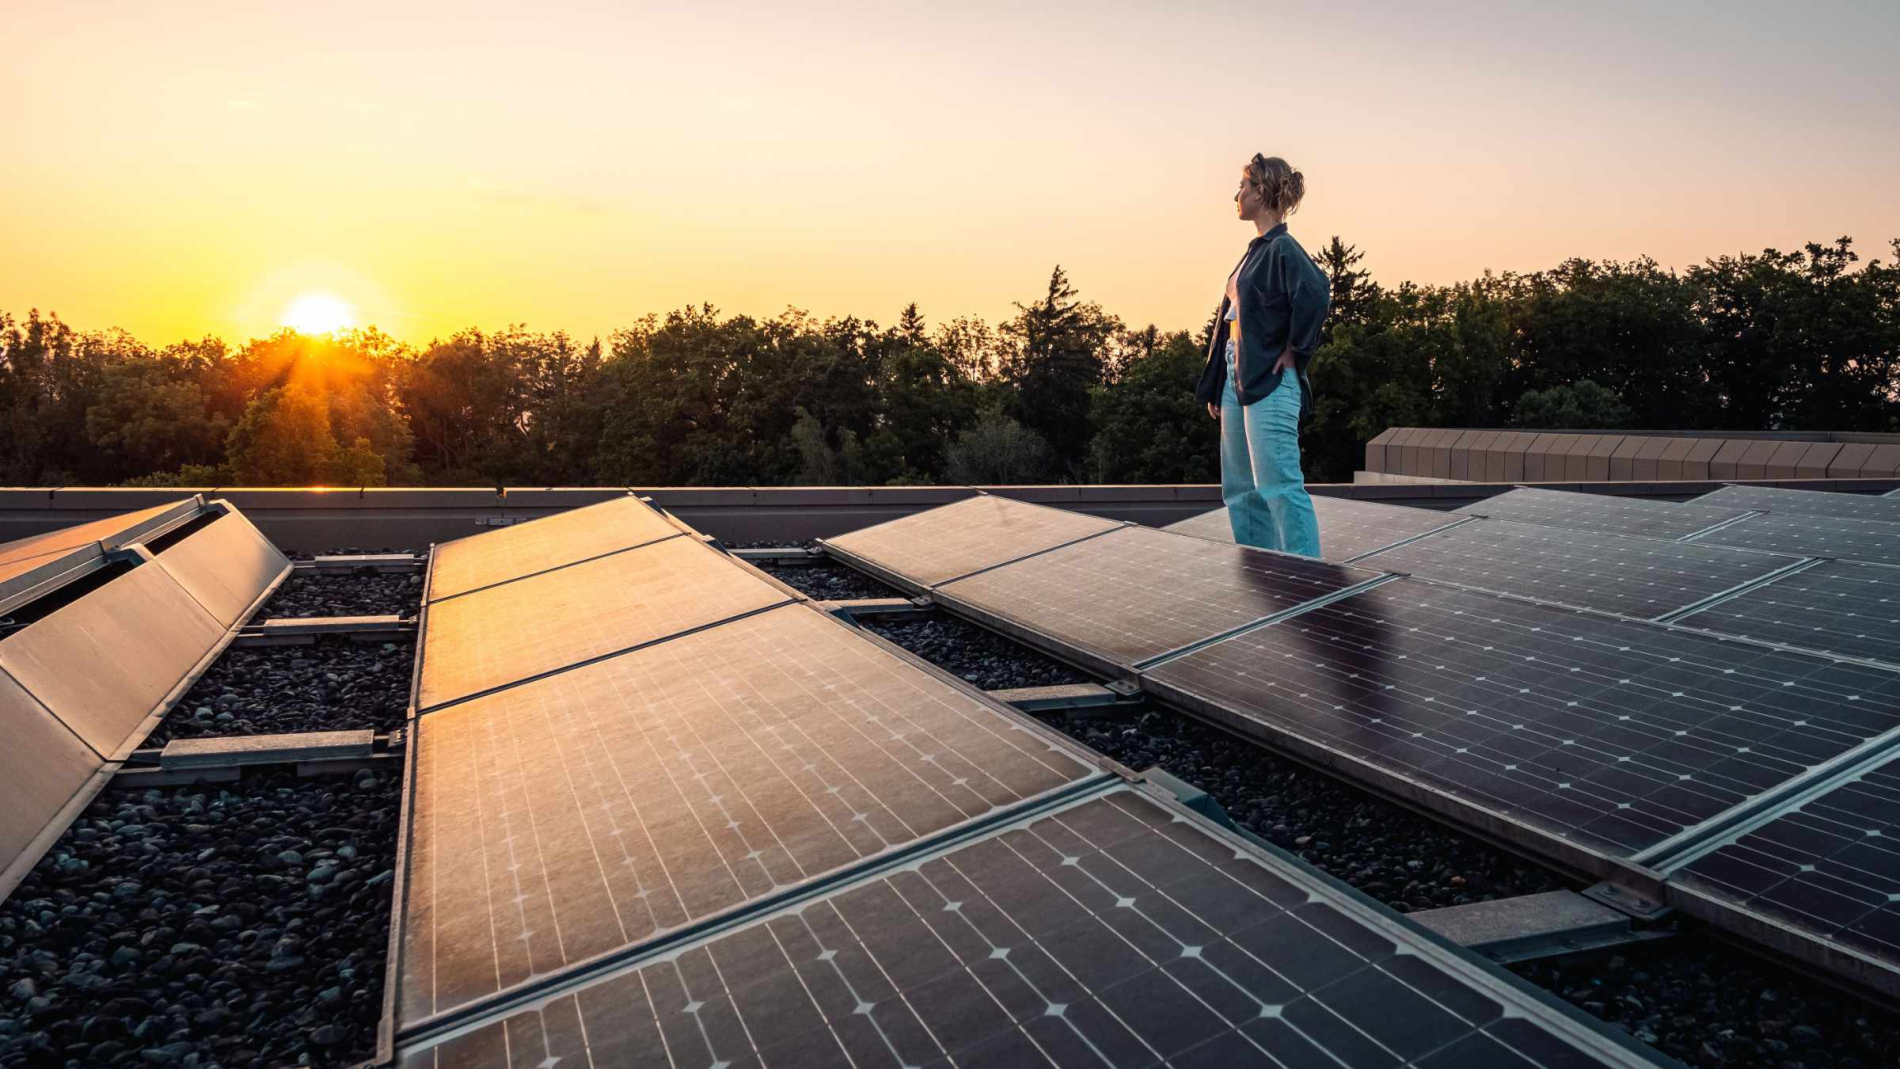 Studentin der RWU steht auf dem Dach eines Hochschulgebäudes und blickt beim Sonnenuntergang über Solarpanels hinweg in die Ferne.